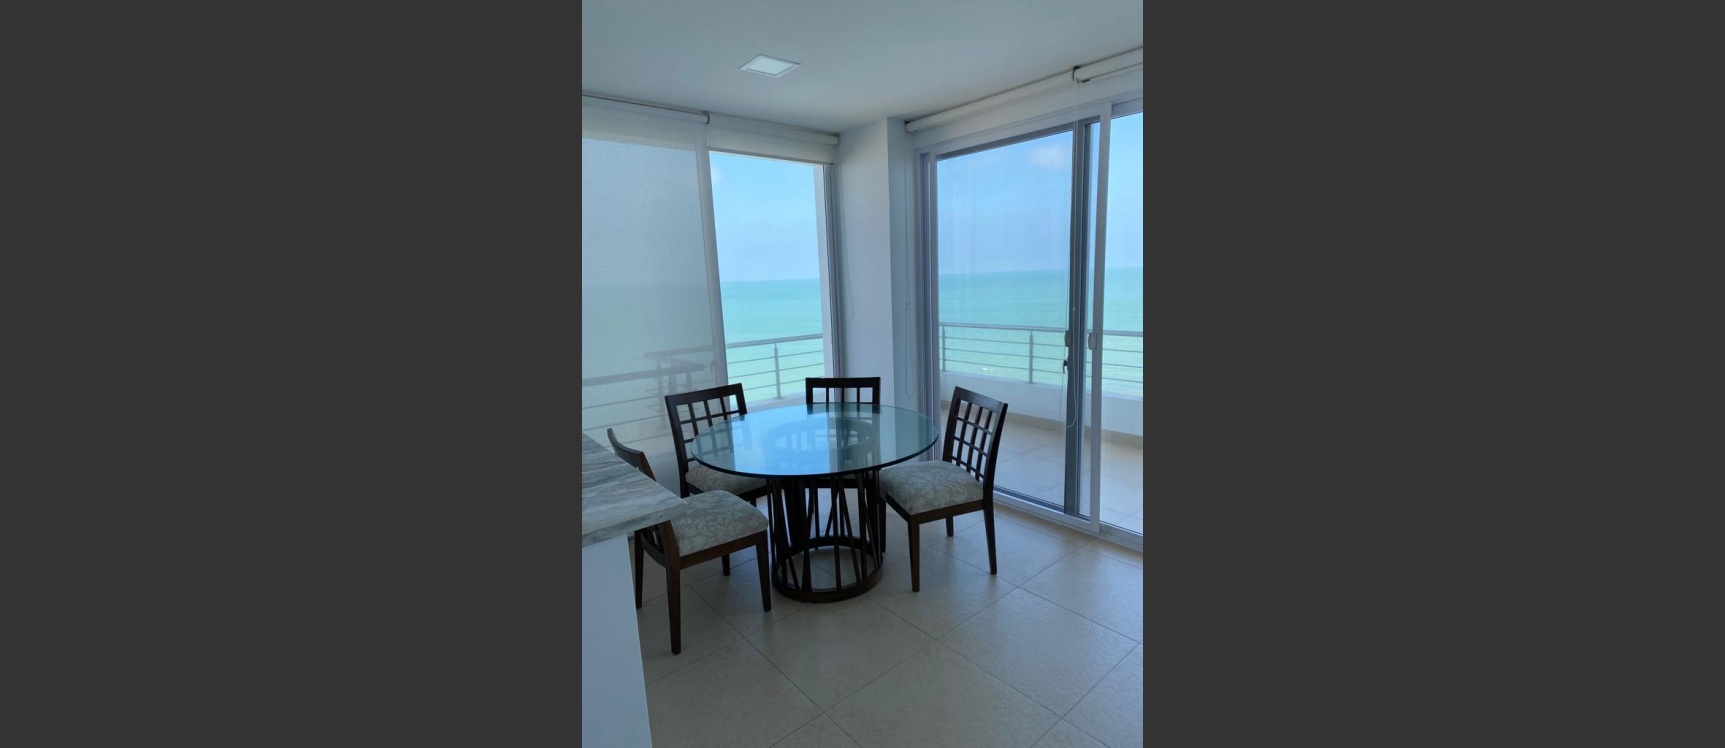 GeoBienes - Departamento amoblado con vista al mar en venta, Punta Mar, Playas - Plusvalia Guayaquil Casas de venta y alquiler Inmobiliaria Ecuador